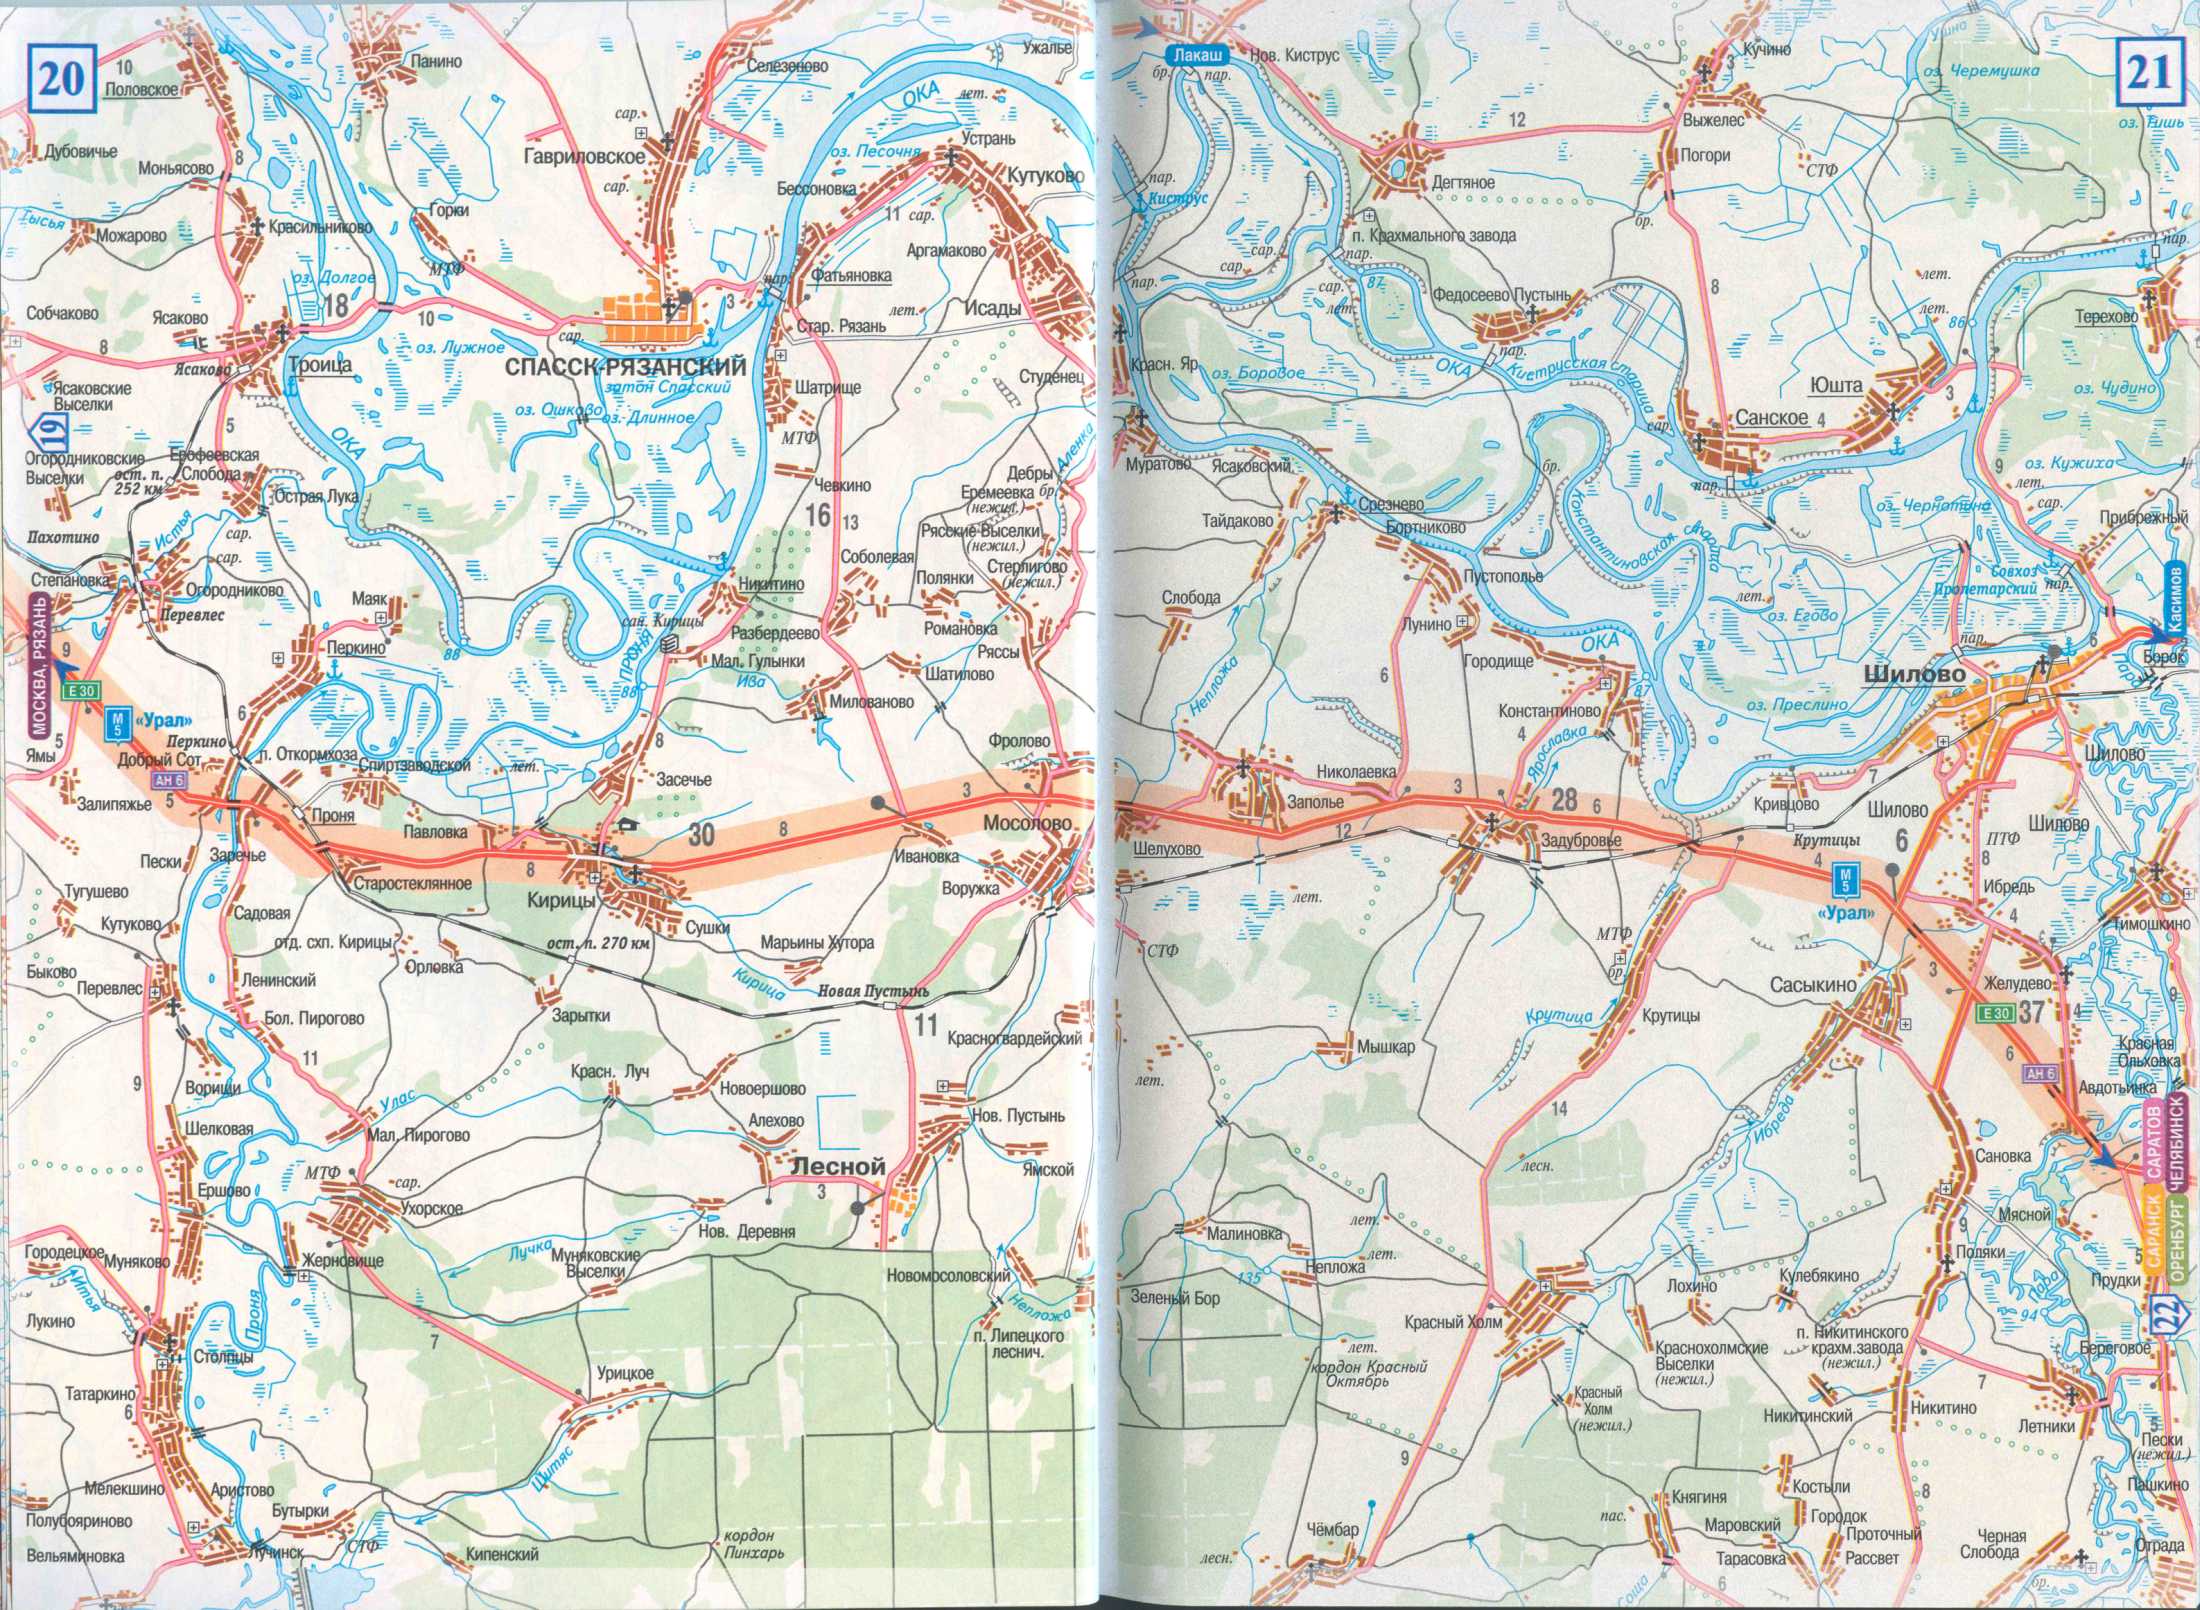 Карта дороги Рязань - Зубова Поляна. Подробная карта автотрассы М5 от Рязани до Зубовой Поляны, B0 - 